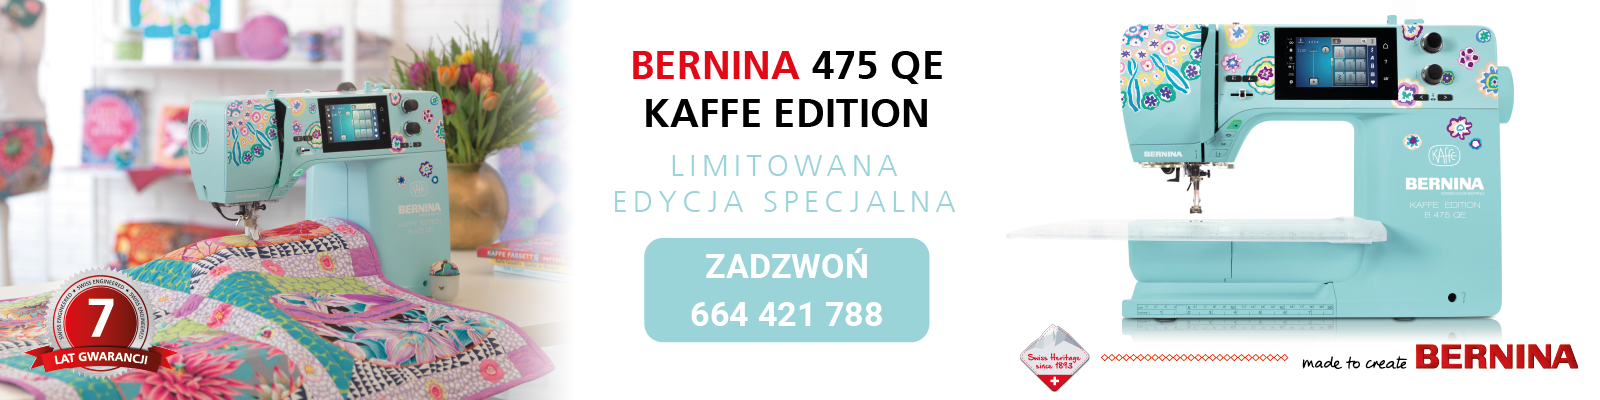 Bernina 475 QE Kaffe Edition